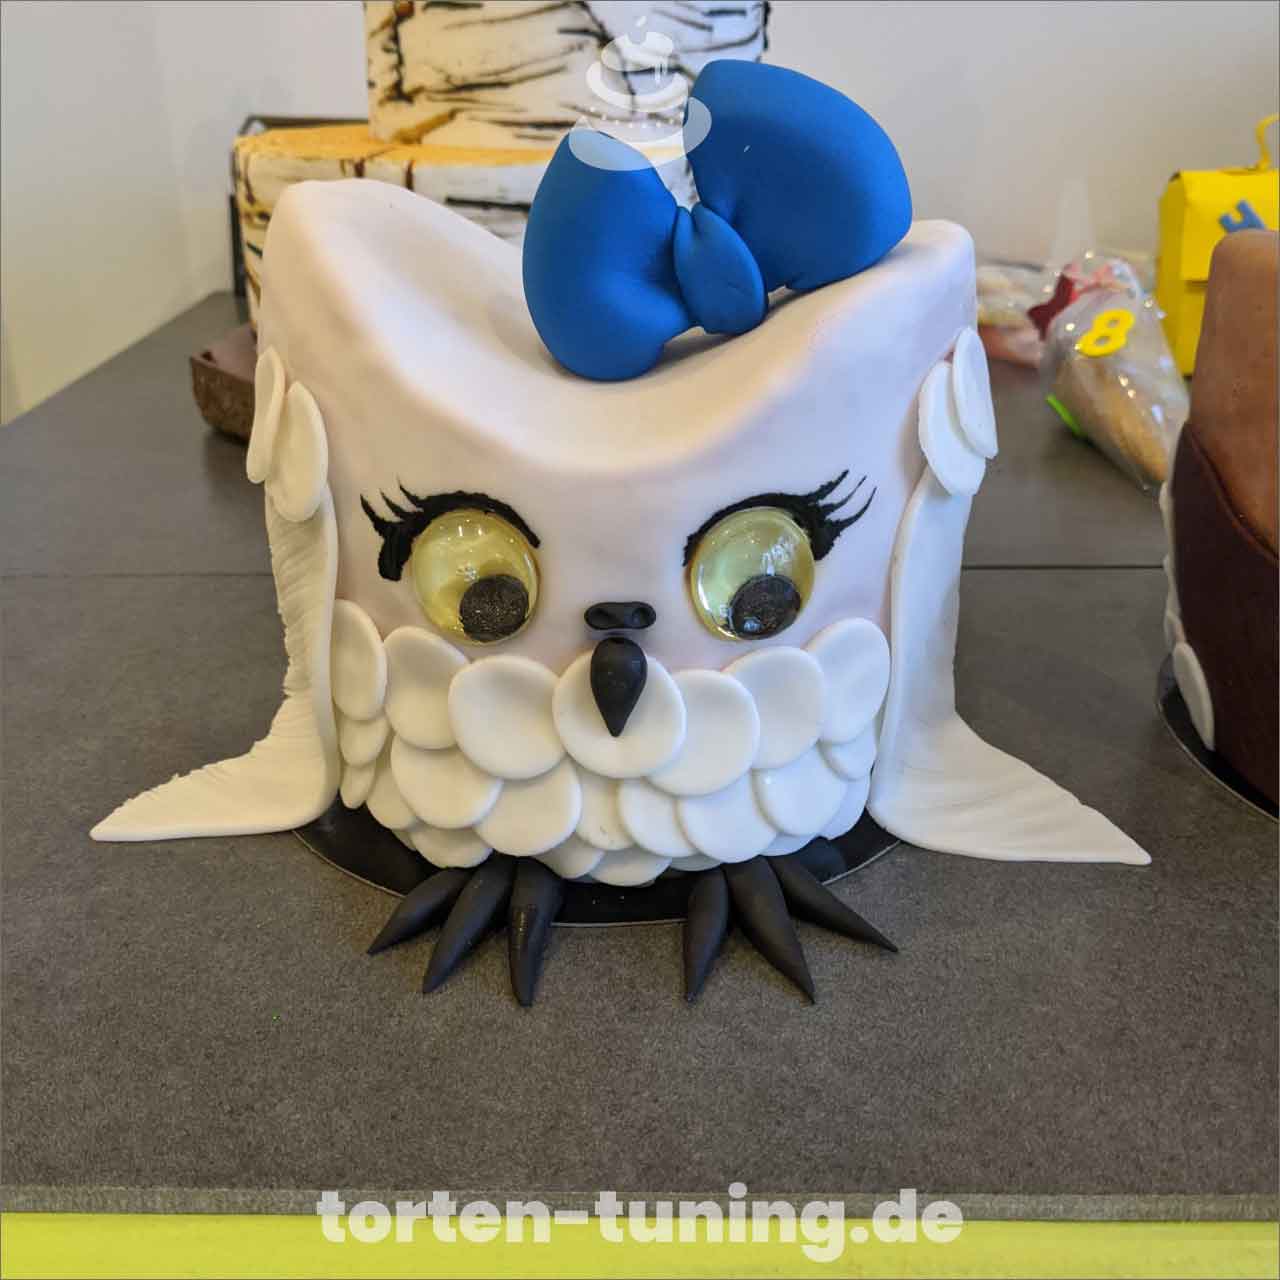 Pikachu Schiggy Glumanda Pokemon Torte Torten Tuning Tortendekoration Geburtstagstorten Suhl Thüringen Backzubehörshop online bestellen Hochzeitstorte modellierte Figur